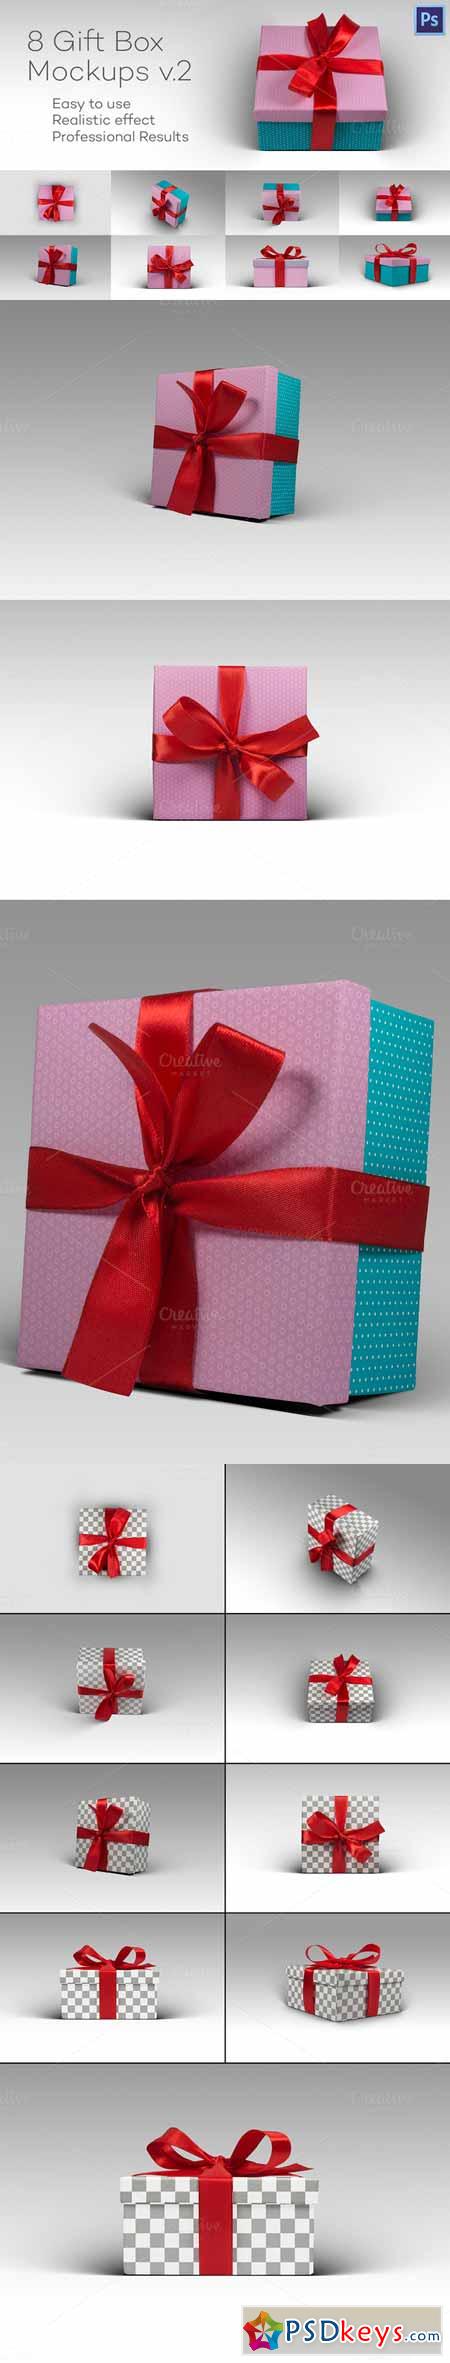 8 Photorealistic Gift Box Mockps v.2 474082